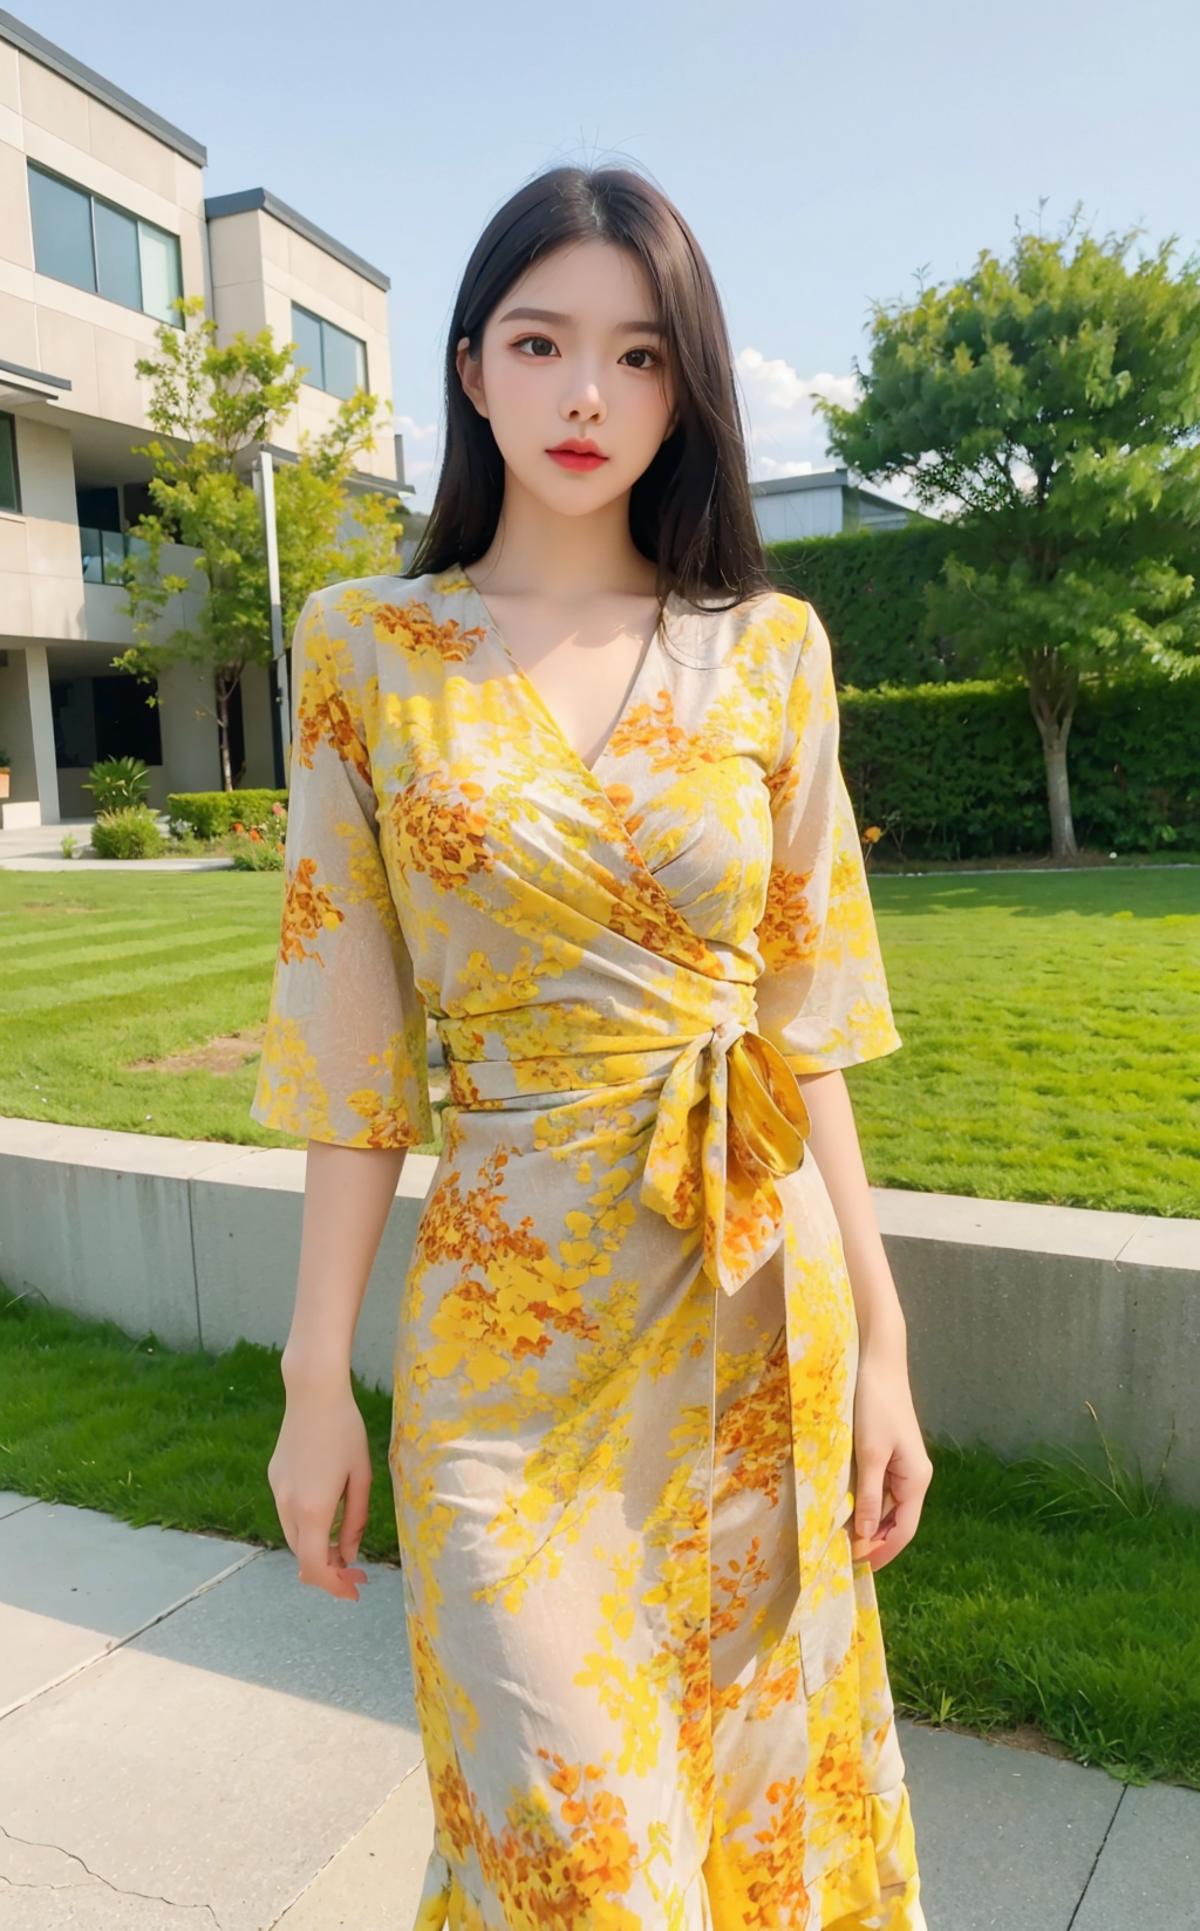 Yellow fashion dress|黄色战袍 image by wei001